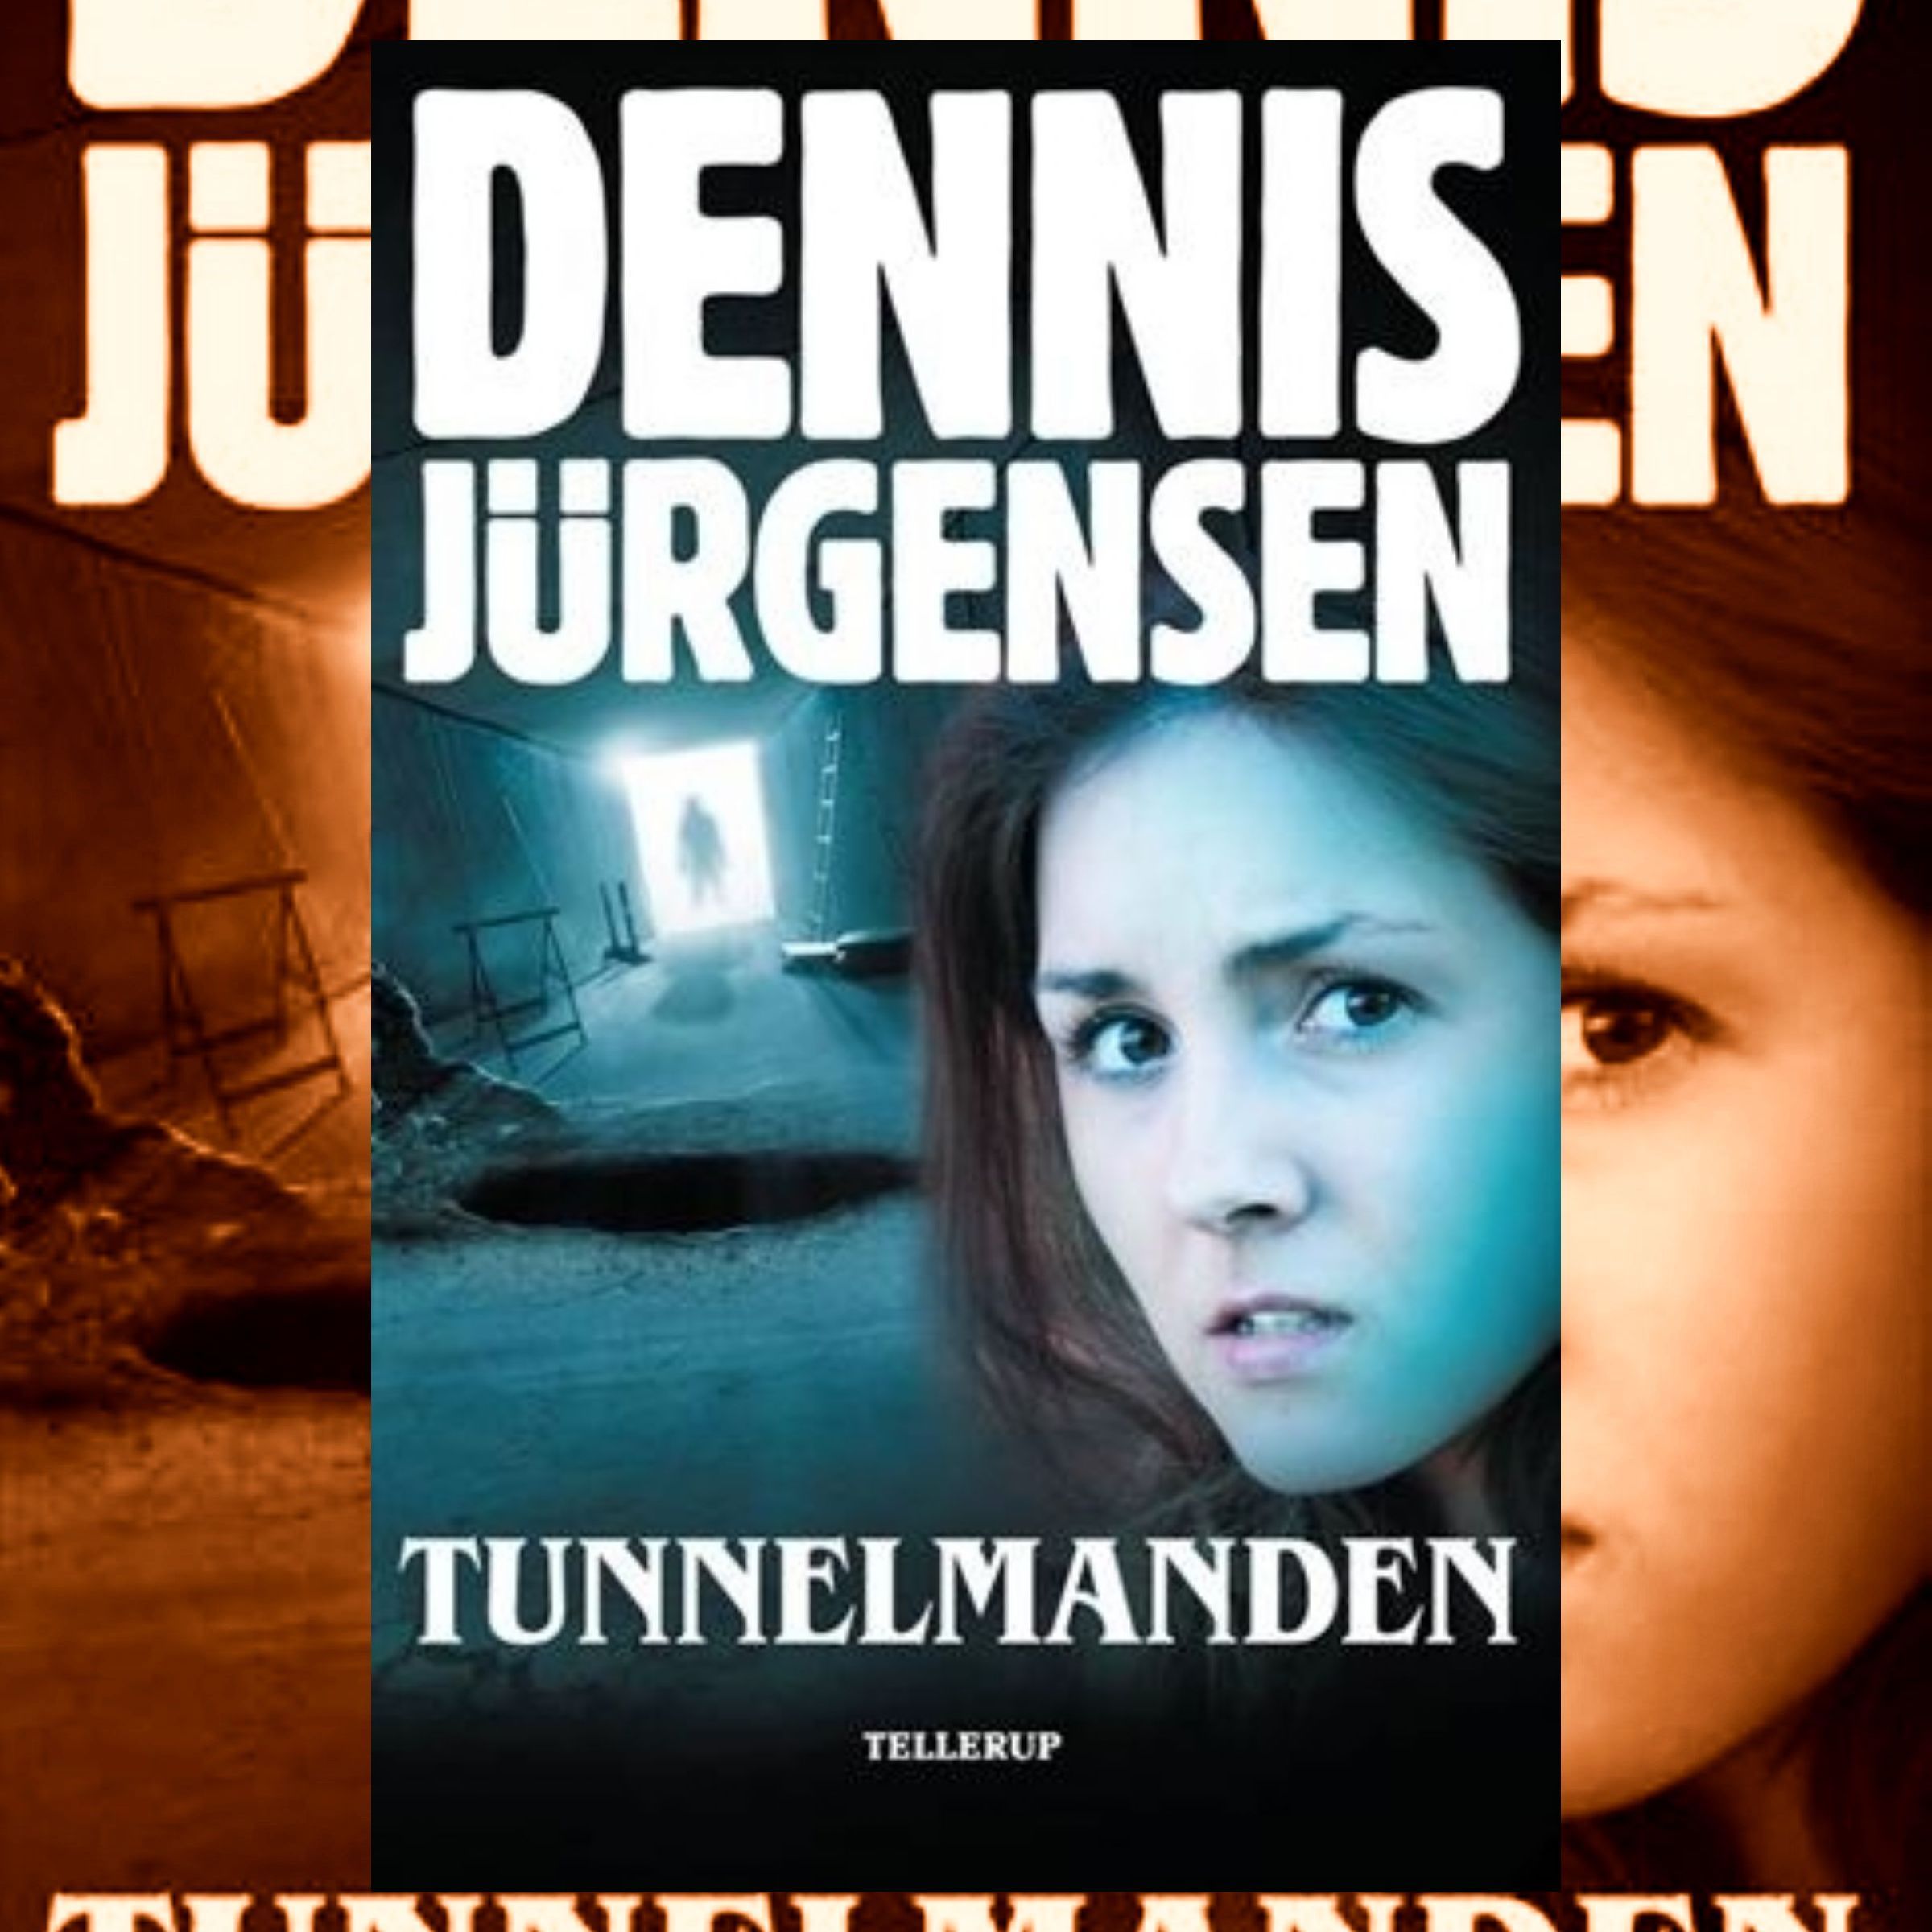 Tunnelmanden, ljudbok av Dennis Jürgensen